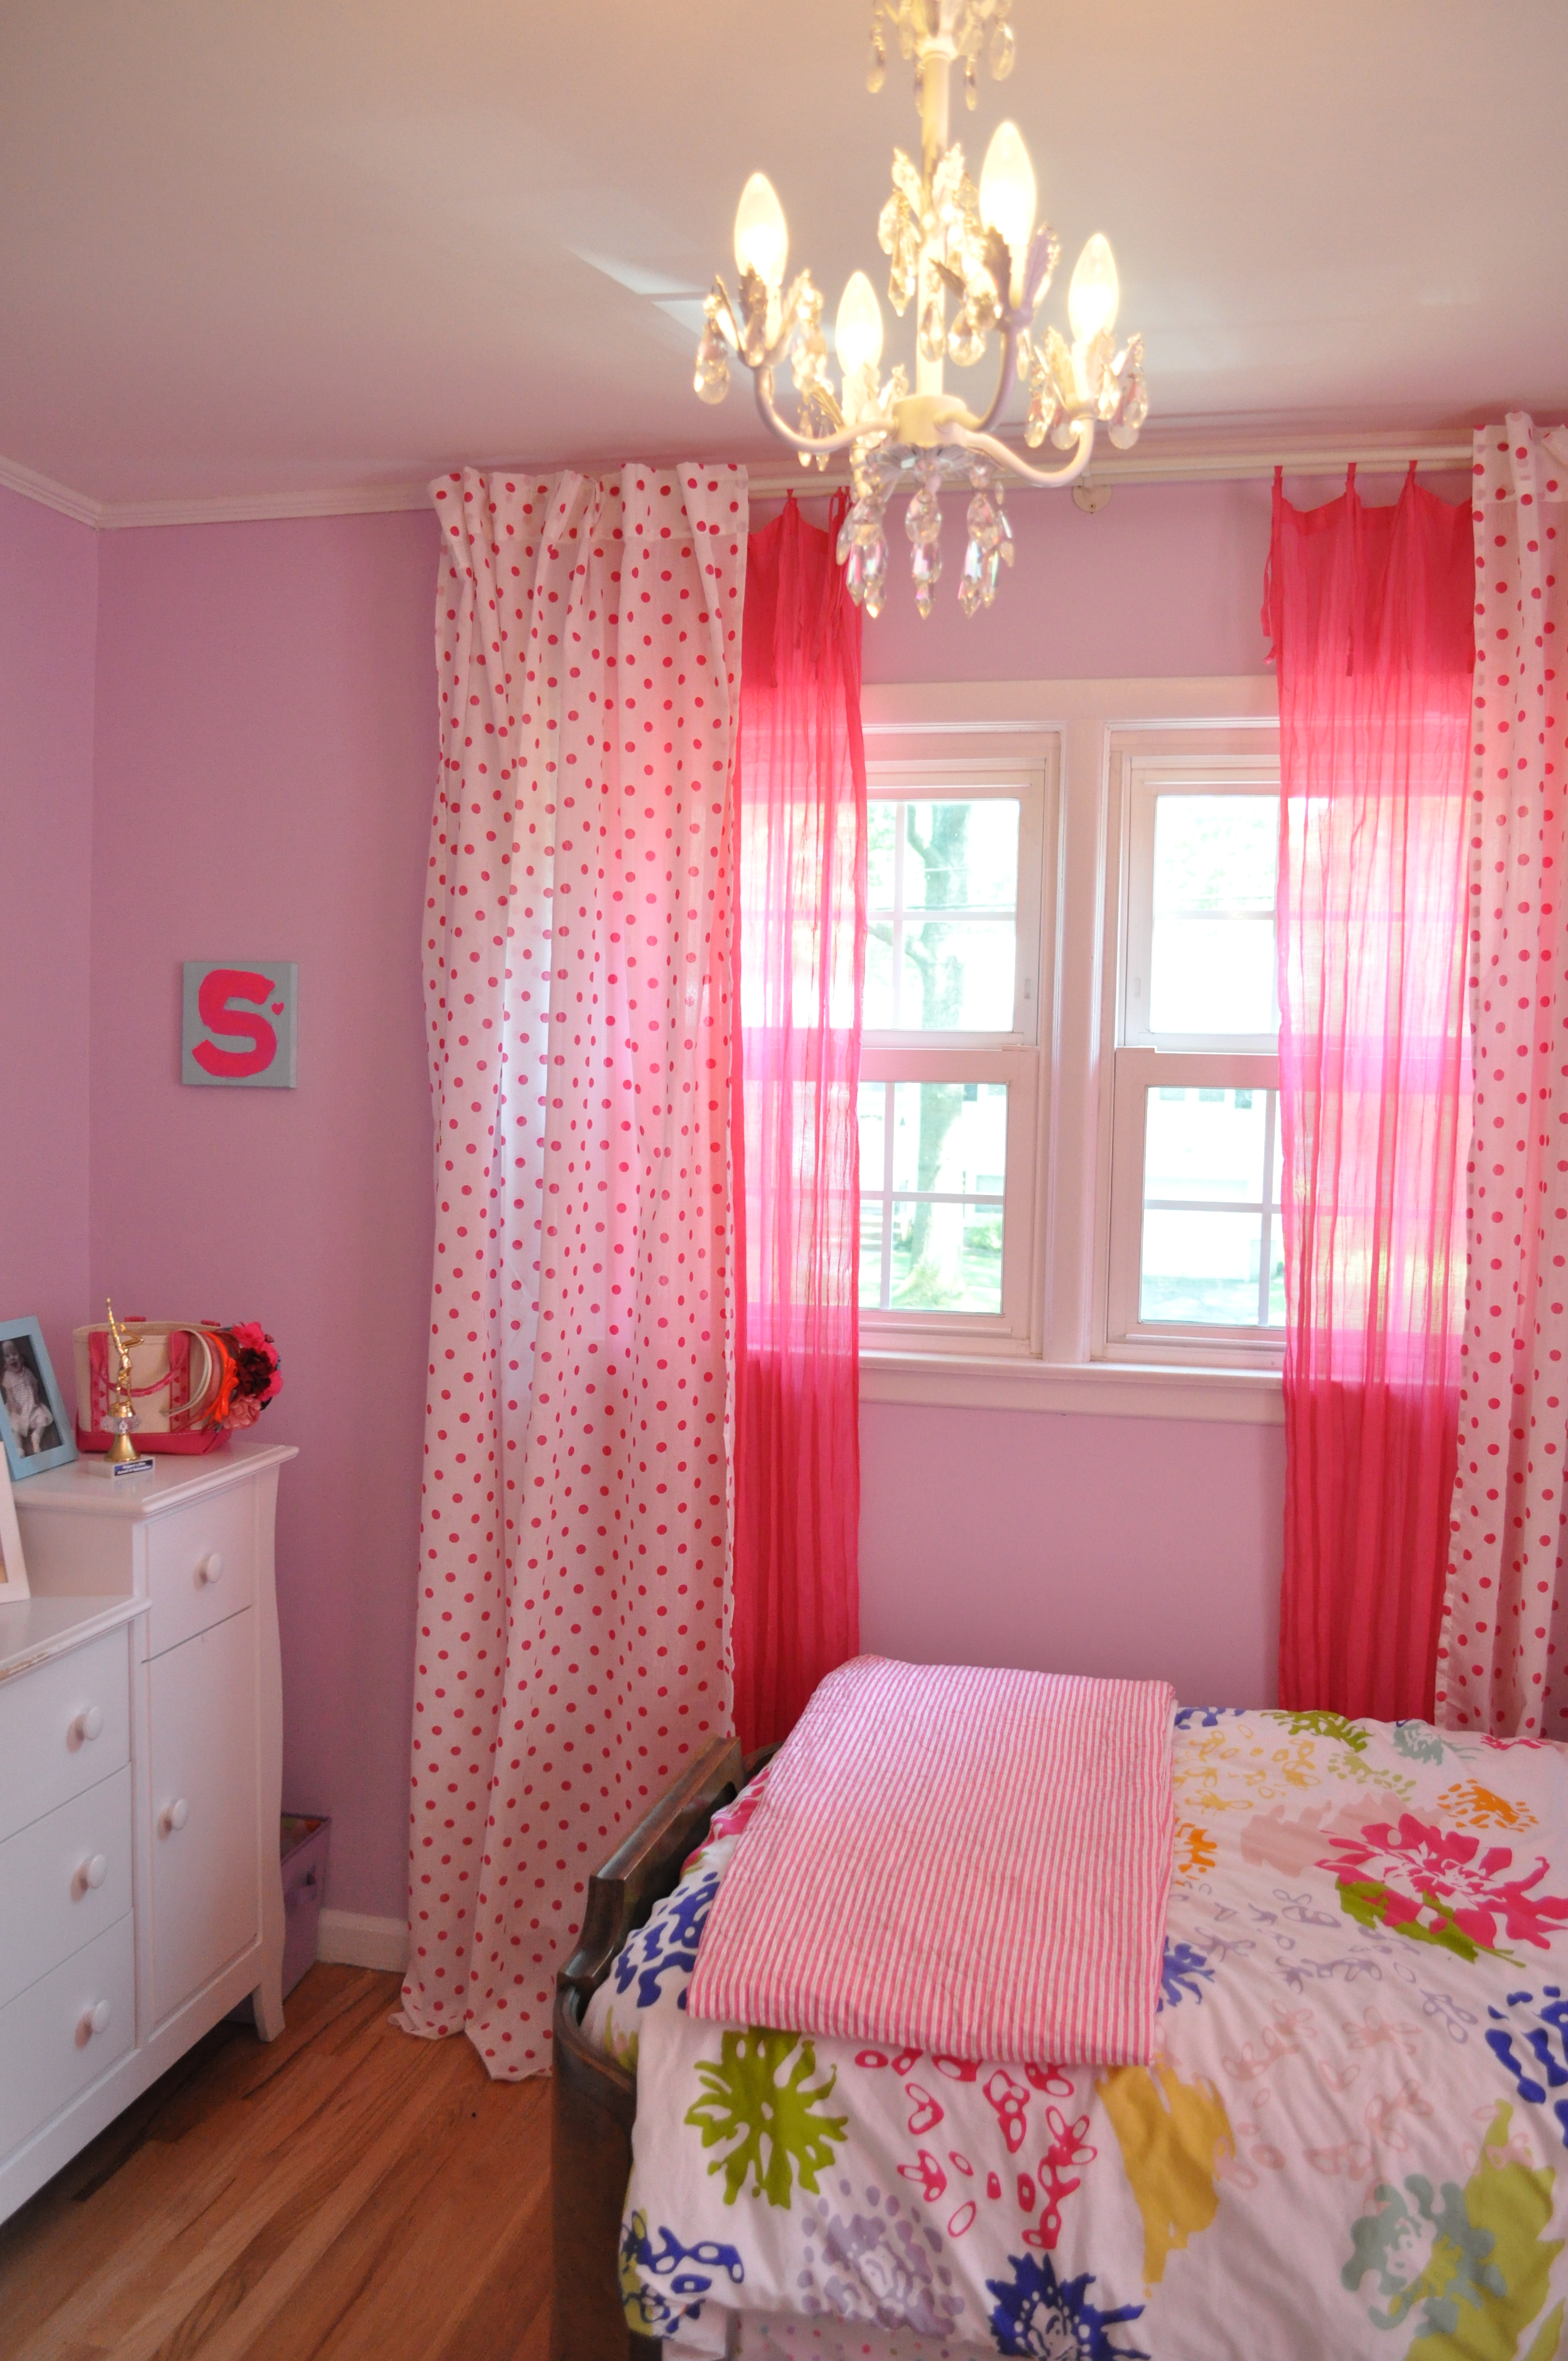 Wonderful Bedroom Design For Teen Girls